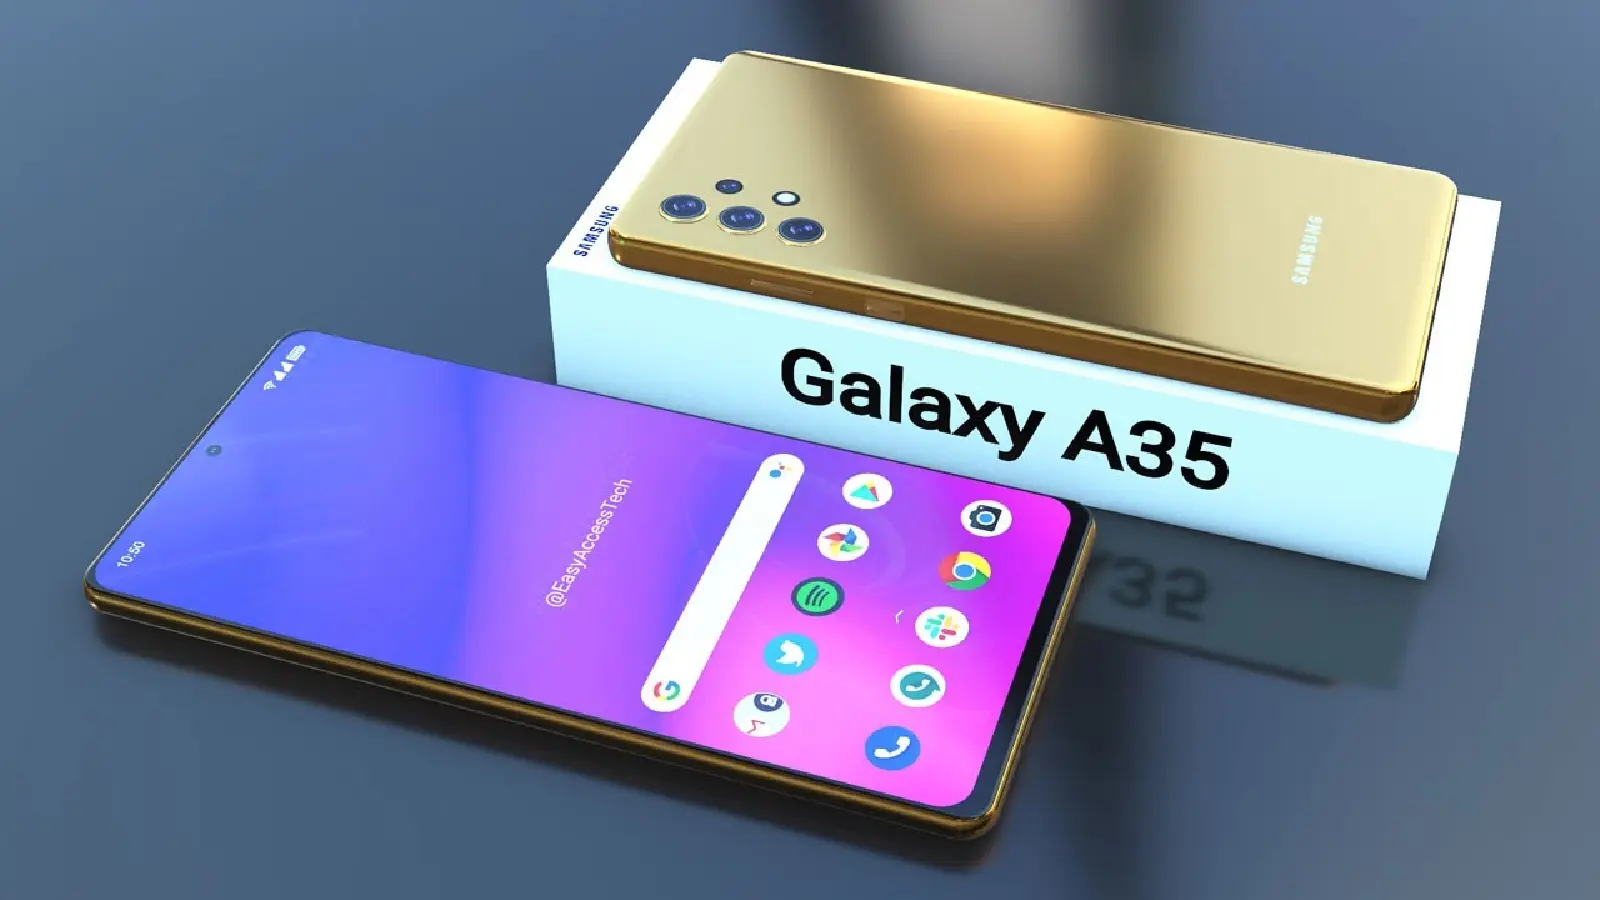 Samsung Galaxy A35'in Görselleri Sızdı! Yenilenmiş Tasarımına ve İddialı Kameralara Göz Atın! - 9sn.net